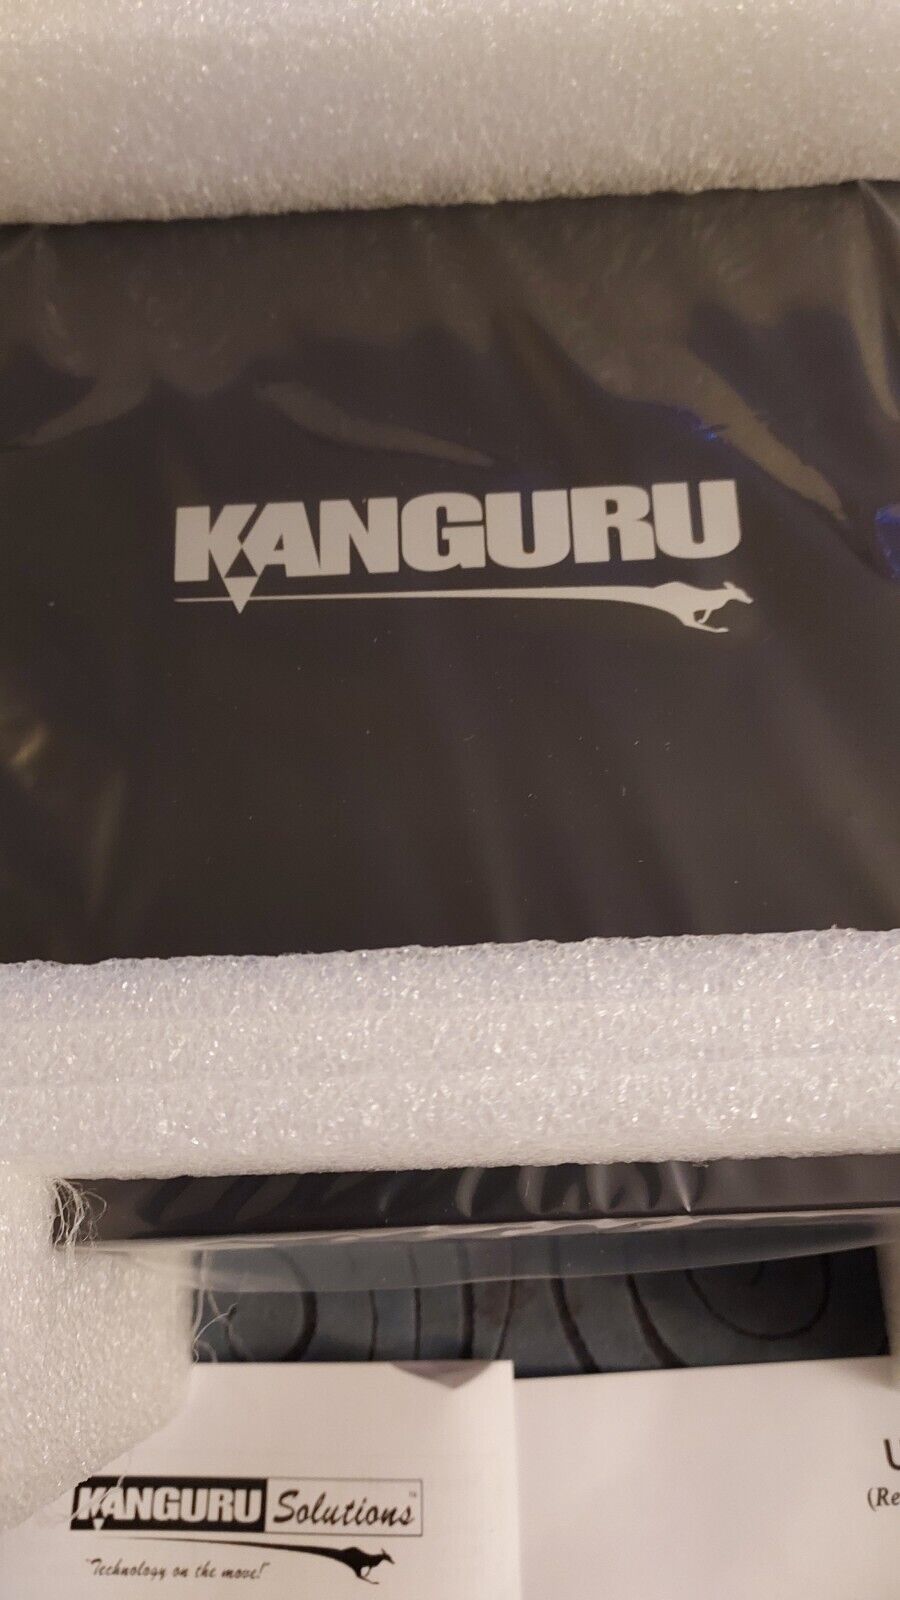 Kanguru Solutions mdl U2-DVDRW-24X Dual-Format DVD Burners.